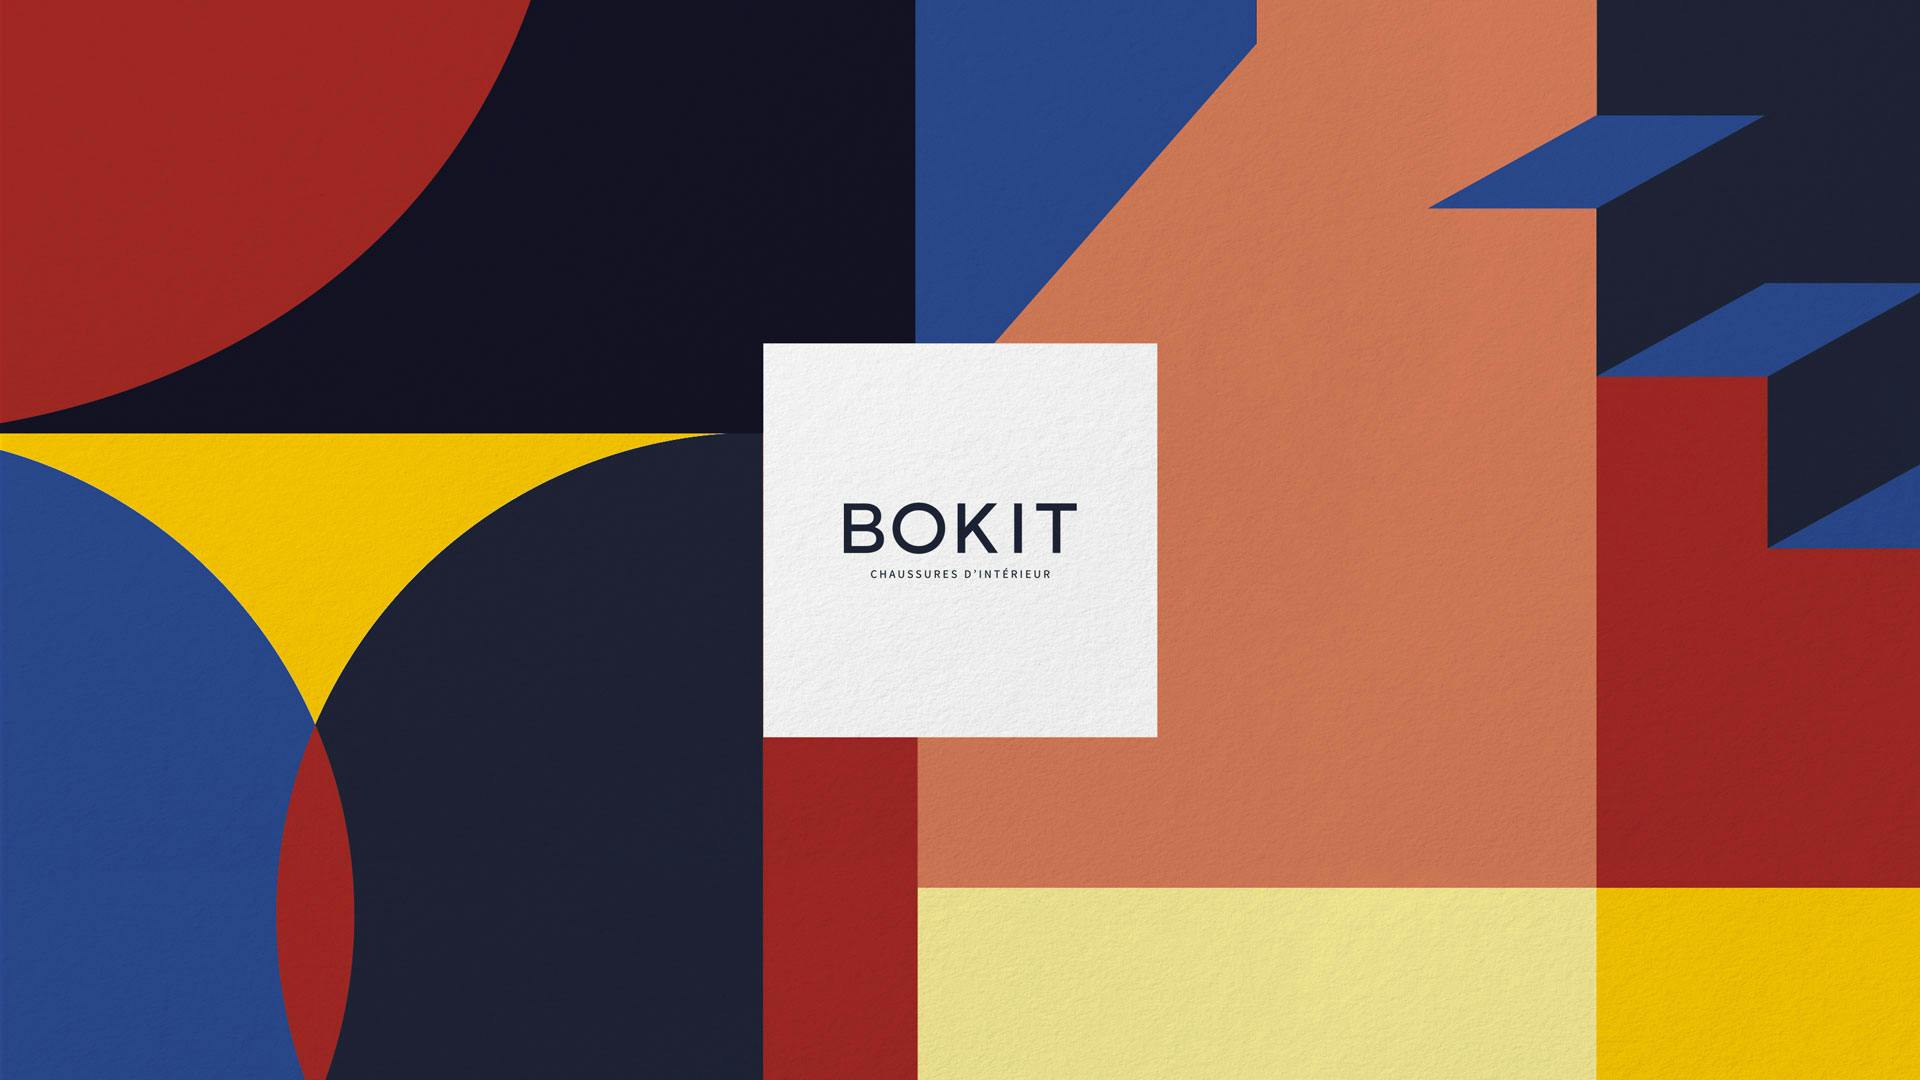 Une nouvelle identité visuelle géométrique et colorée pour la marque de chaussure d'intérieur Bokit